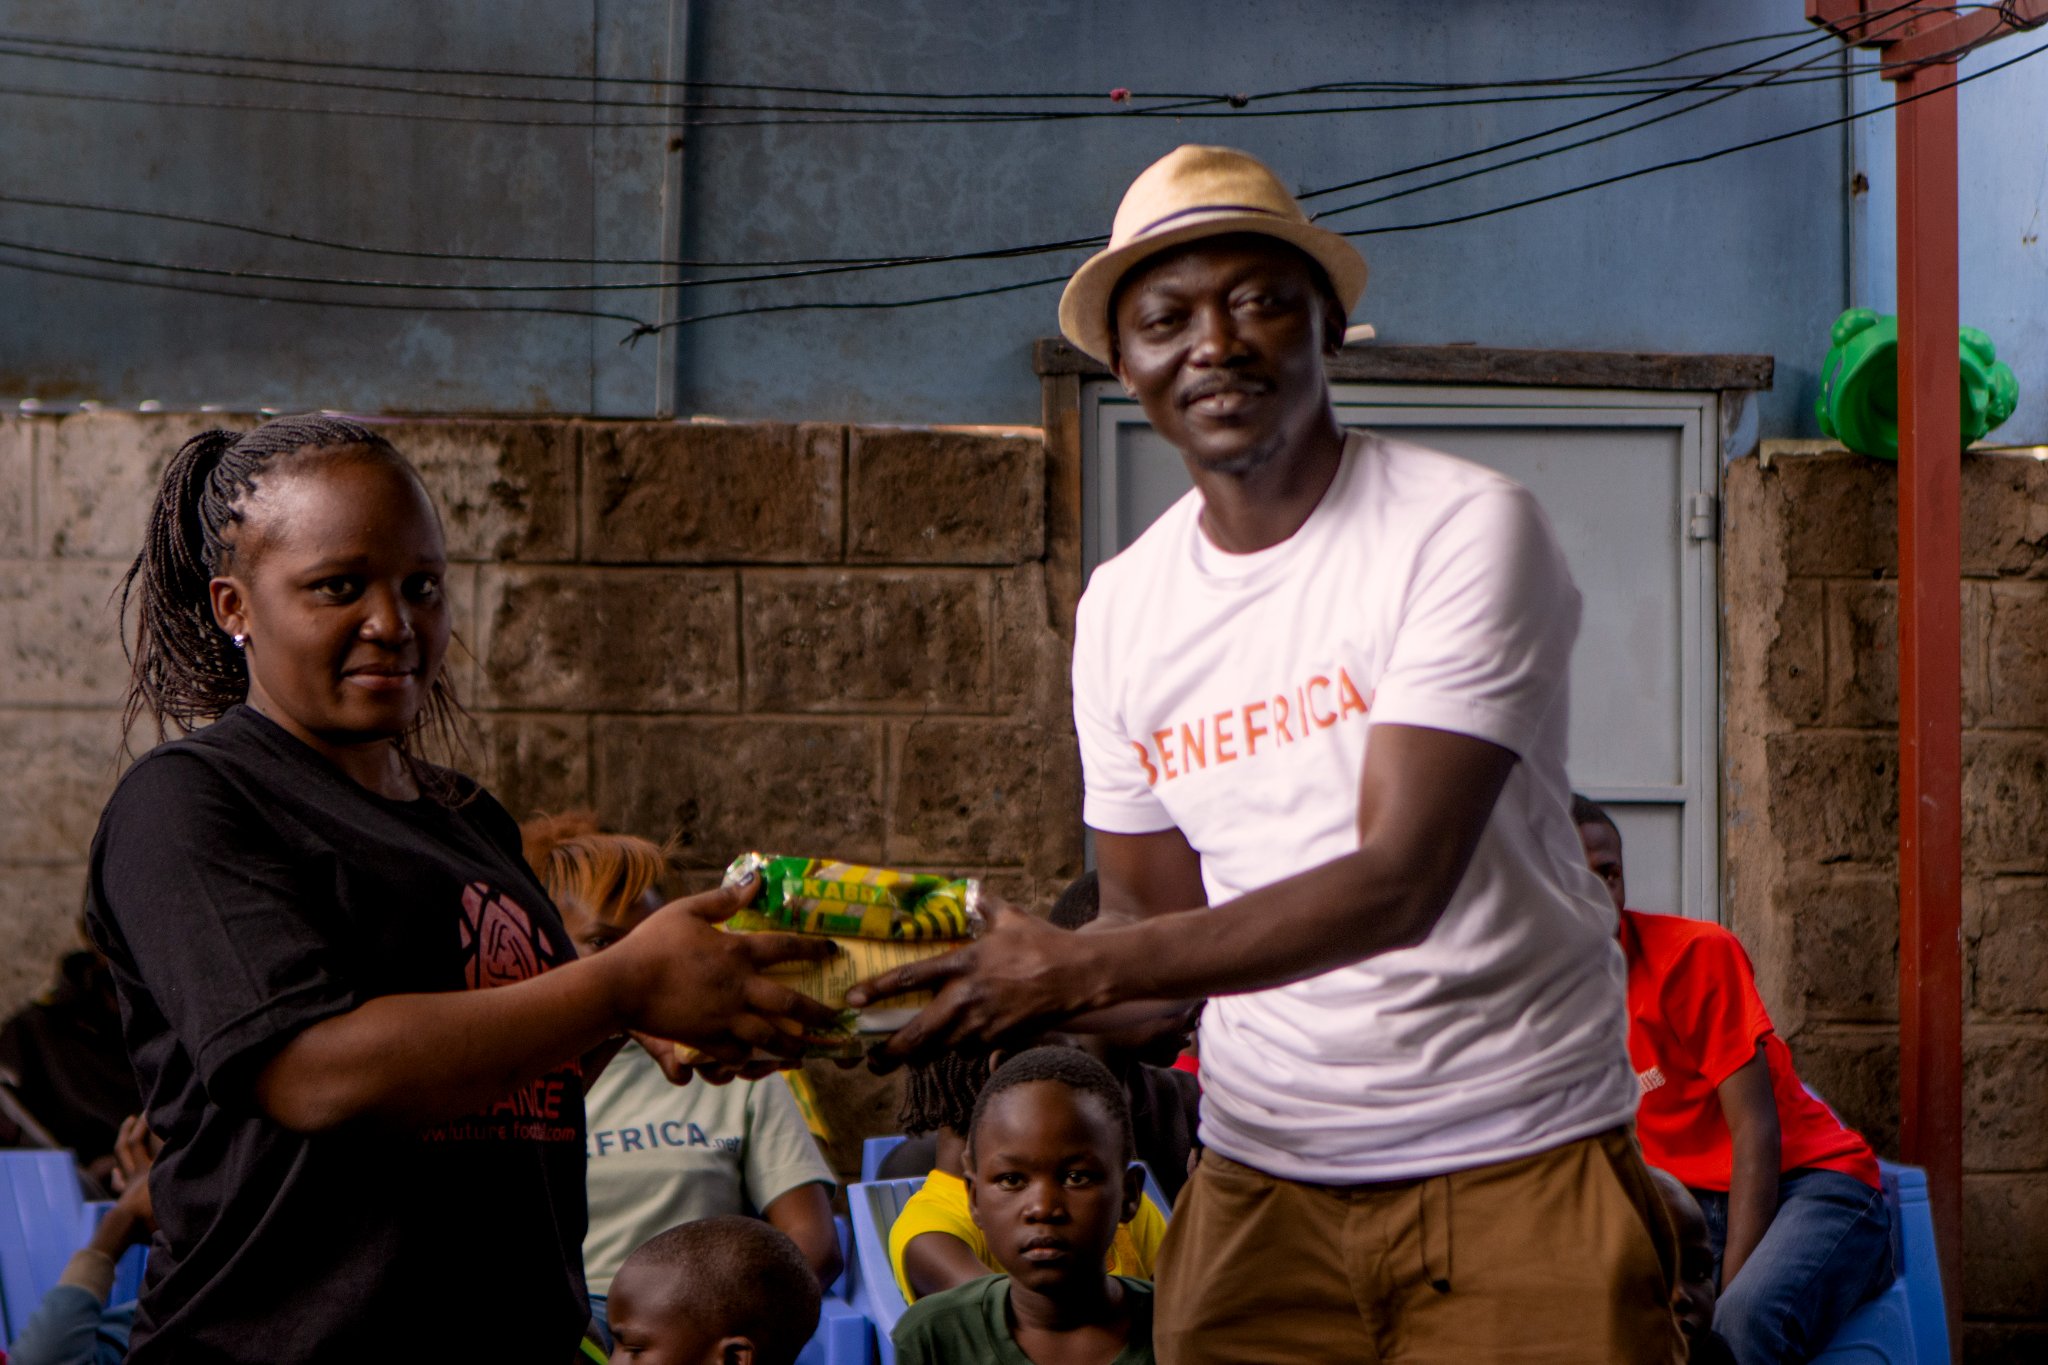 US-Based Author Happy Ogunjimi & His Team Benefrica Visit Kibera Slums